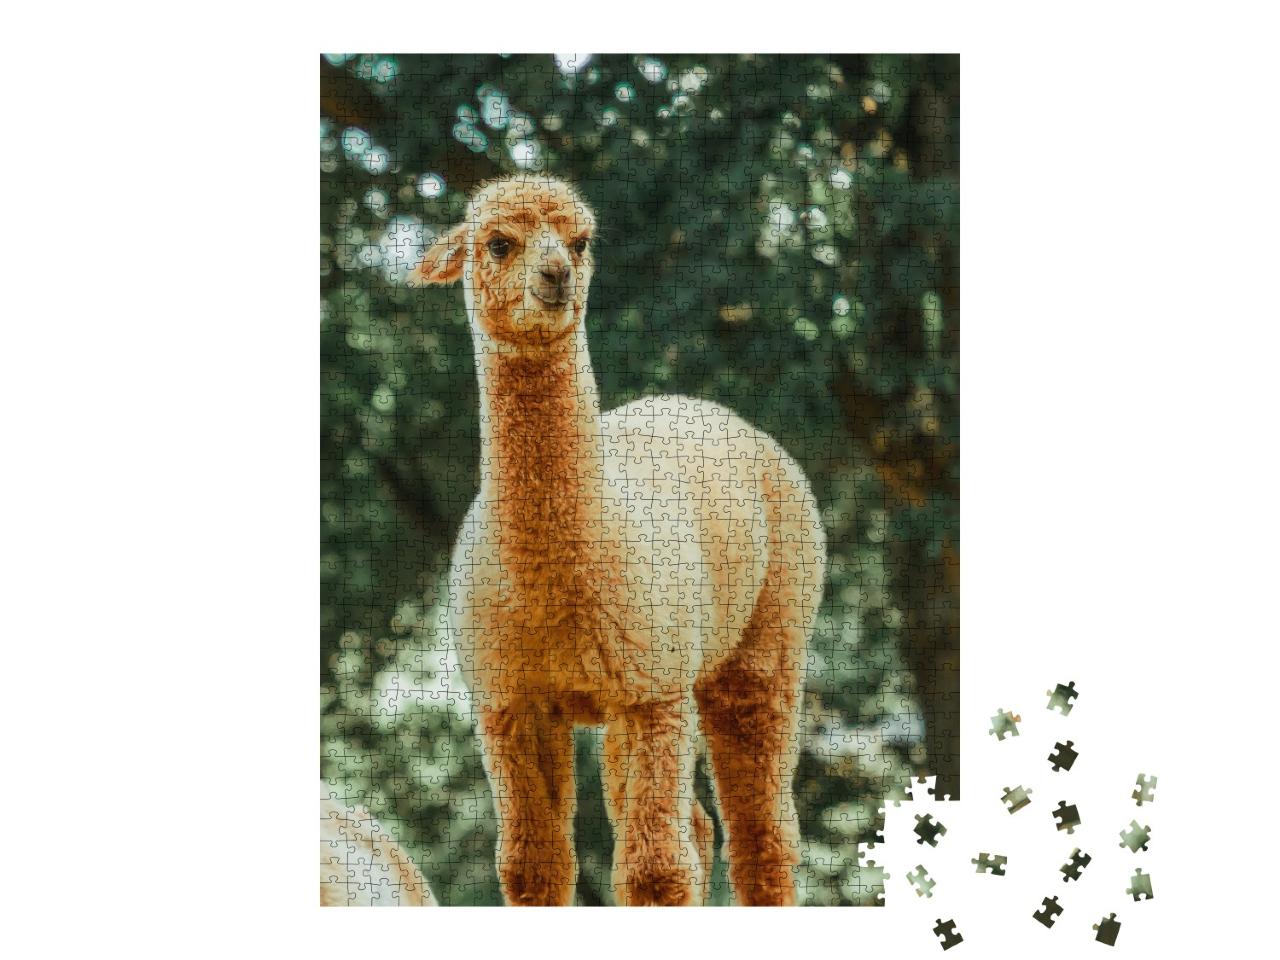 Puzzle de 1000 pièces « Le lama, un mammifère domestique très répandu en Amérique du Sud »